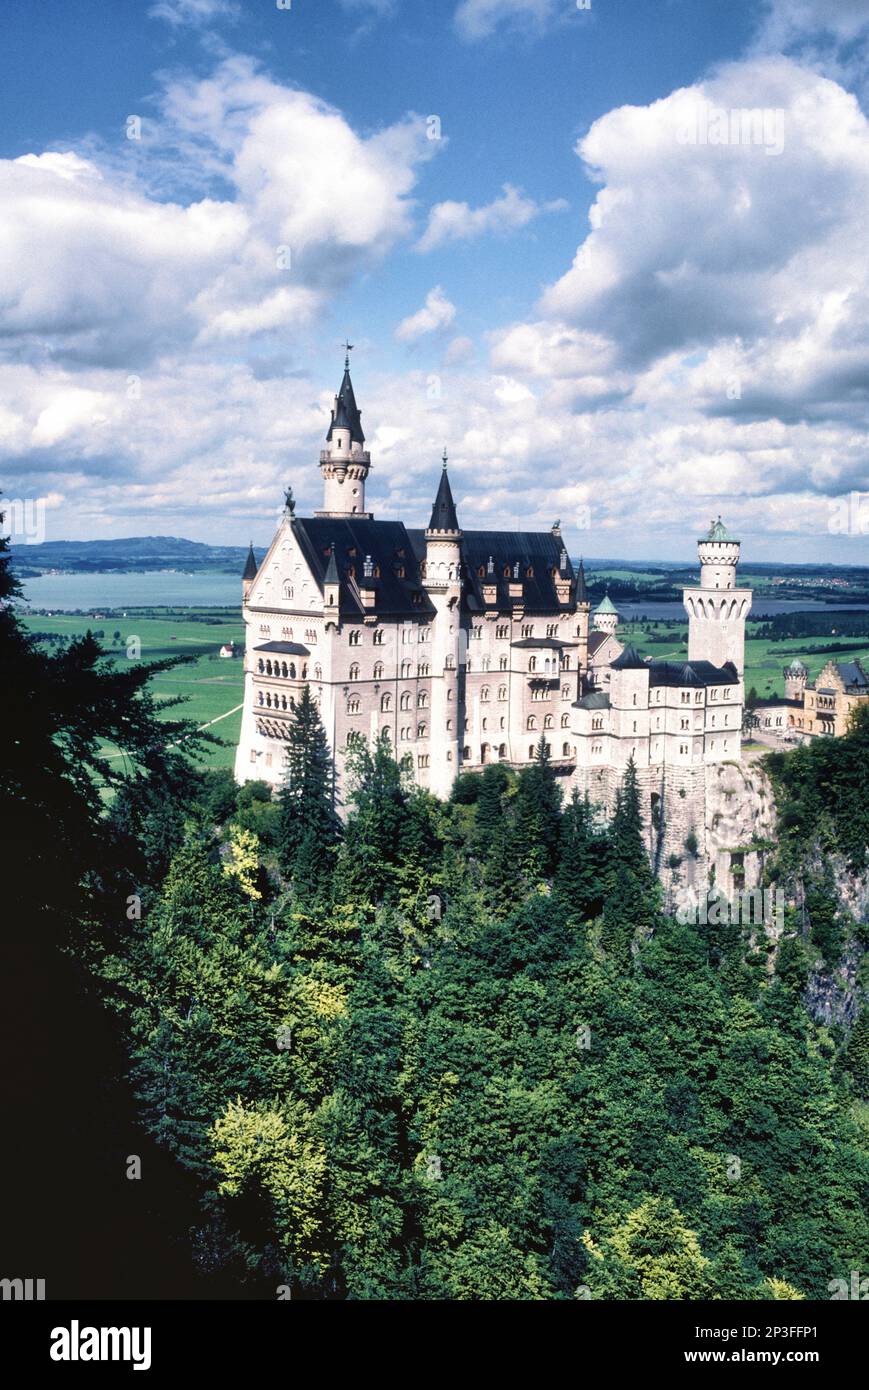 Schloss Neuschwanstein befindet sich in den Ausläufern der Alpen mit Blick auf die sanften Hügel in der Nähe von Schwangau, Bayern. Stockfoto